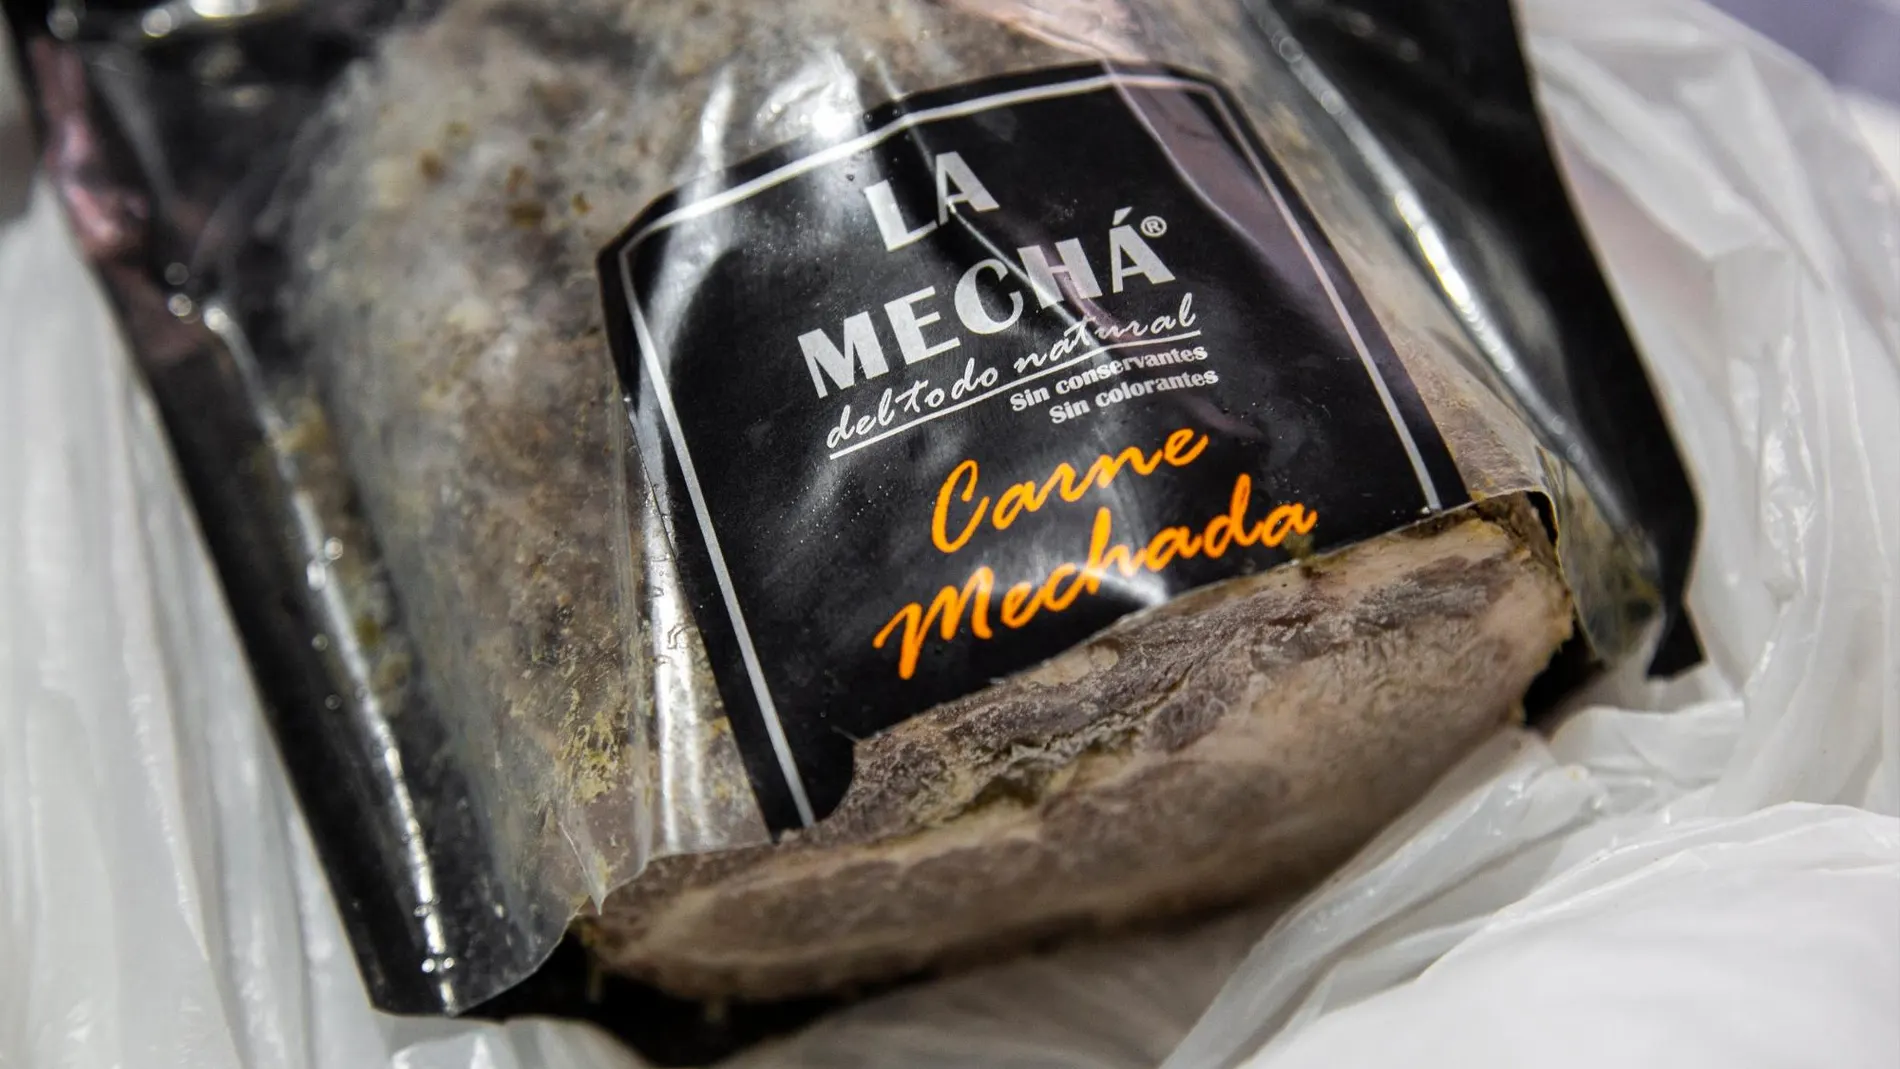 La marca “La mechá” fue la empresa efectada por la listeriosis | EuropaPress